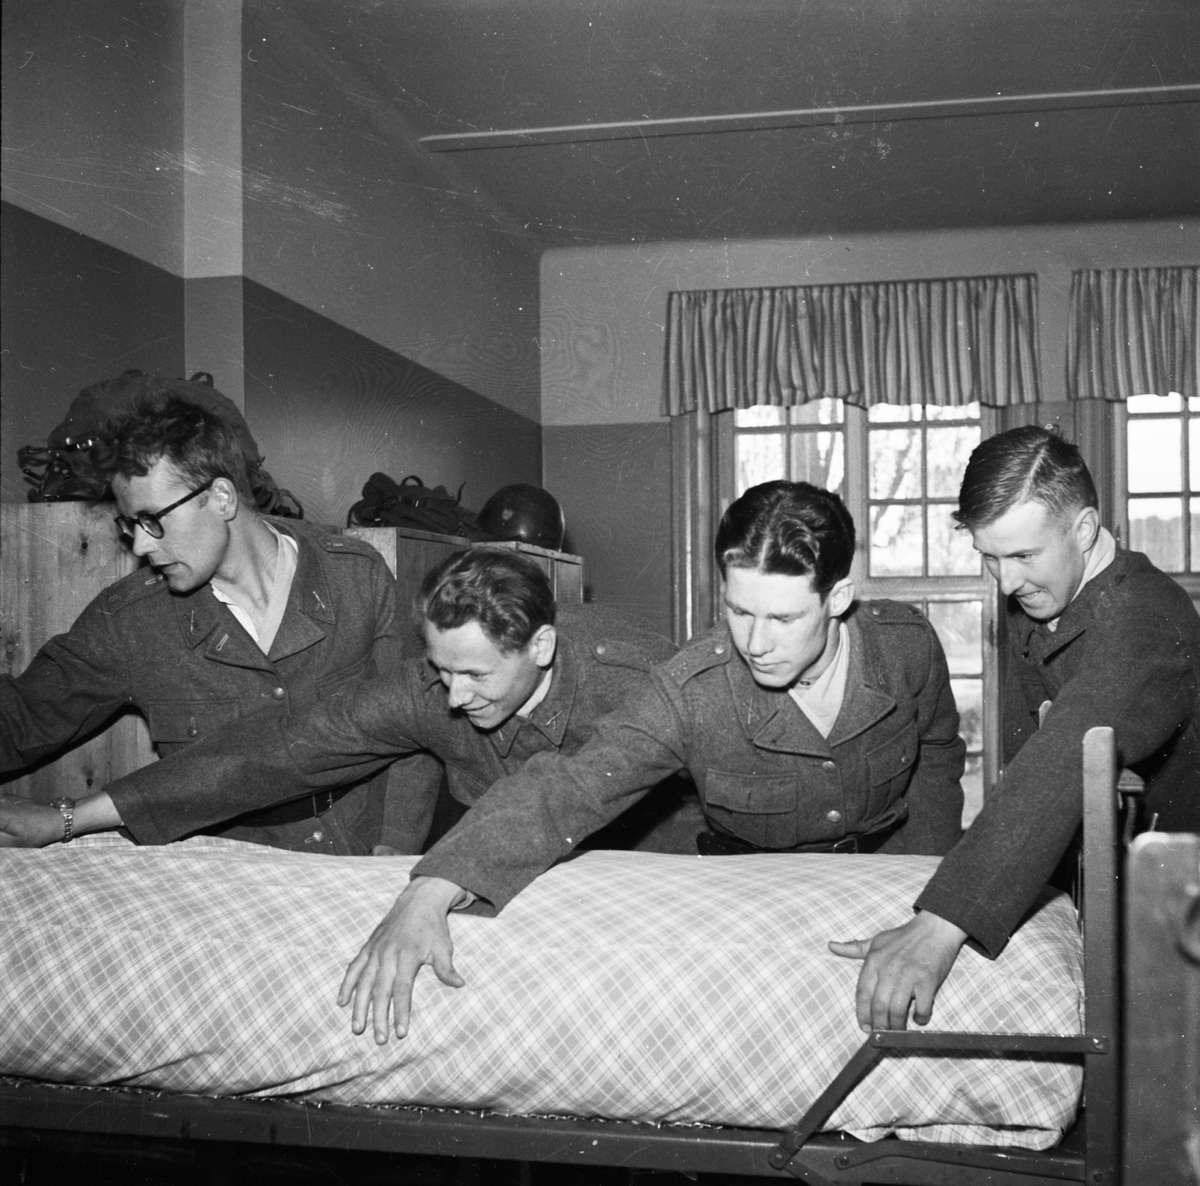 "Ny rekrytomgång på I 8" - Upplands regemente, Uppsala maj 1952. Lars Bertil Bertilsson, Bert Lötstedt, Emil Stenros och Reidar Hagström bäddar säng